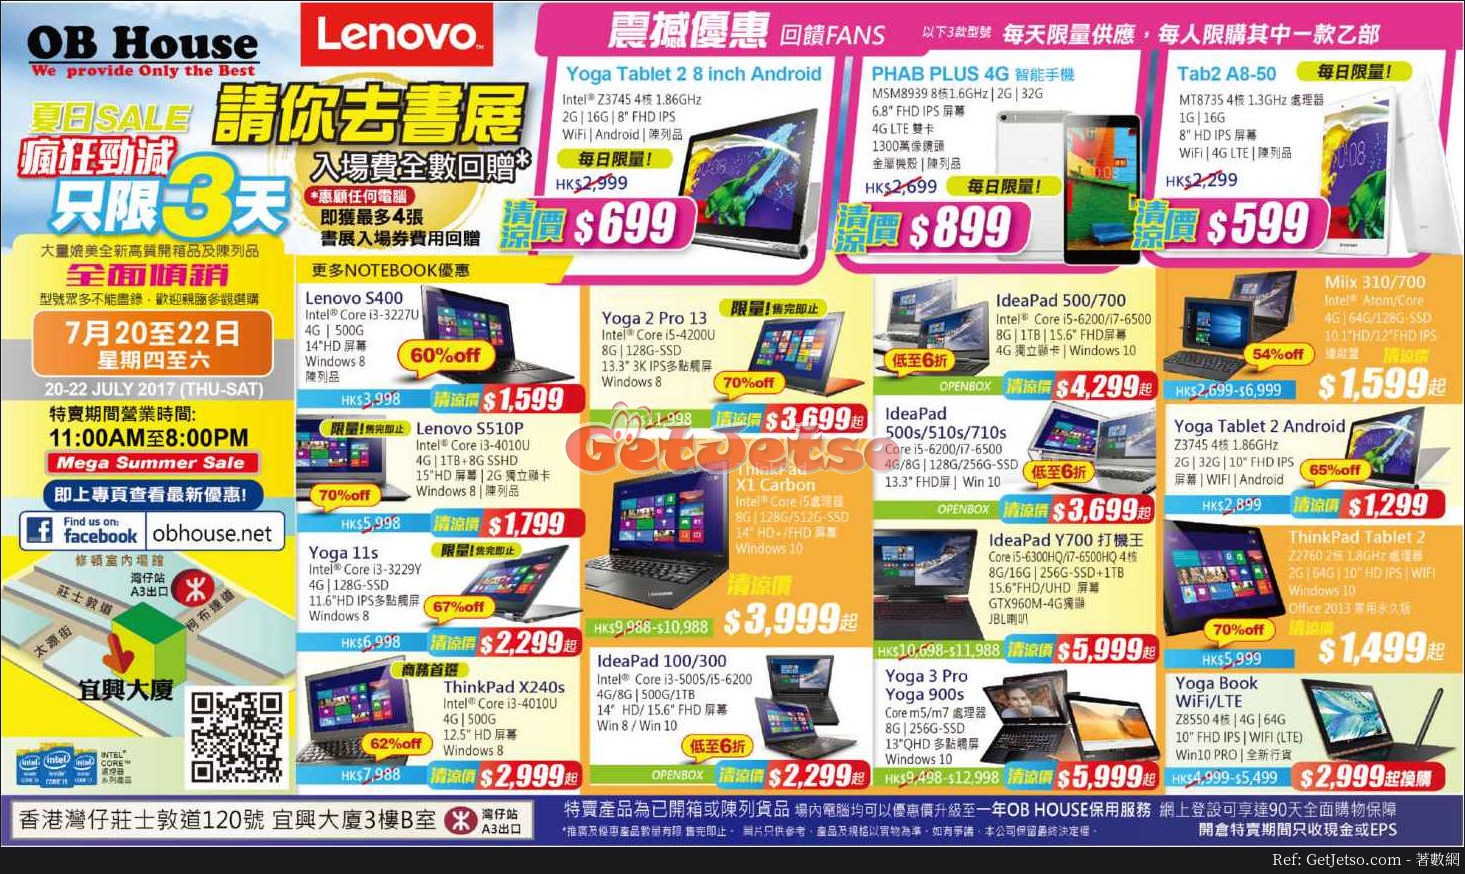 低至3折Lenovo陳列機開倉優惠@OB HOUSE(17年7月20-22日)圖片1